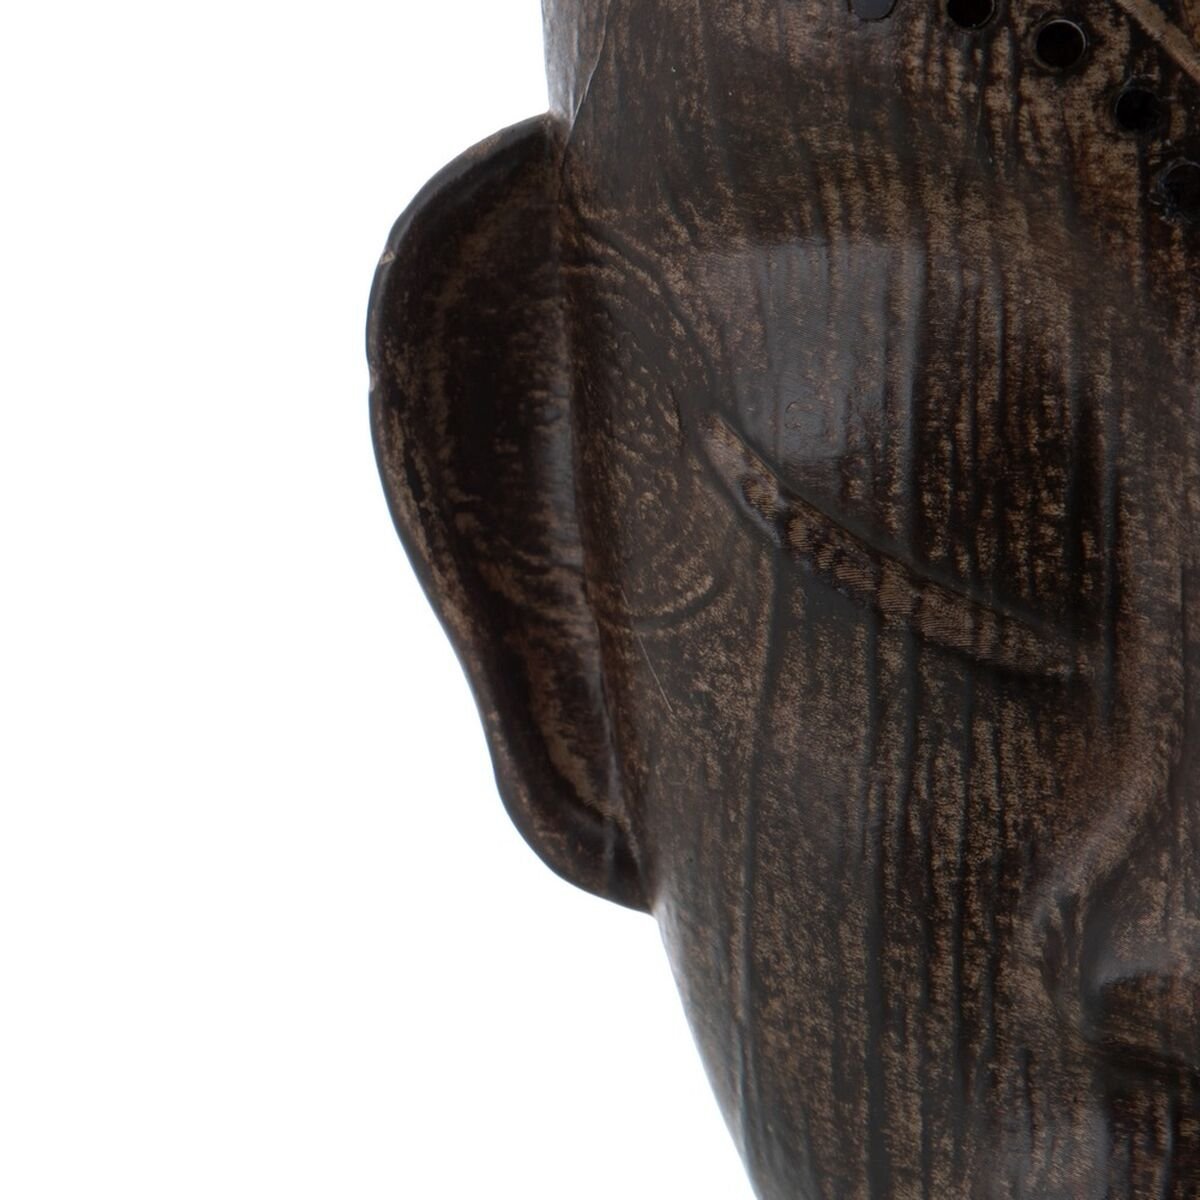 Cap de bărbat african 17 x 16 x 46 cm